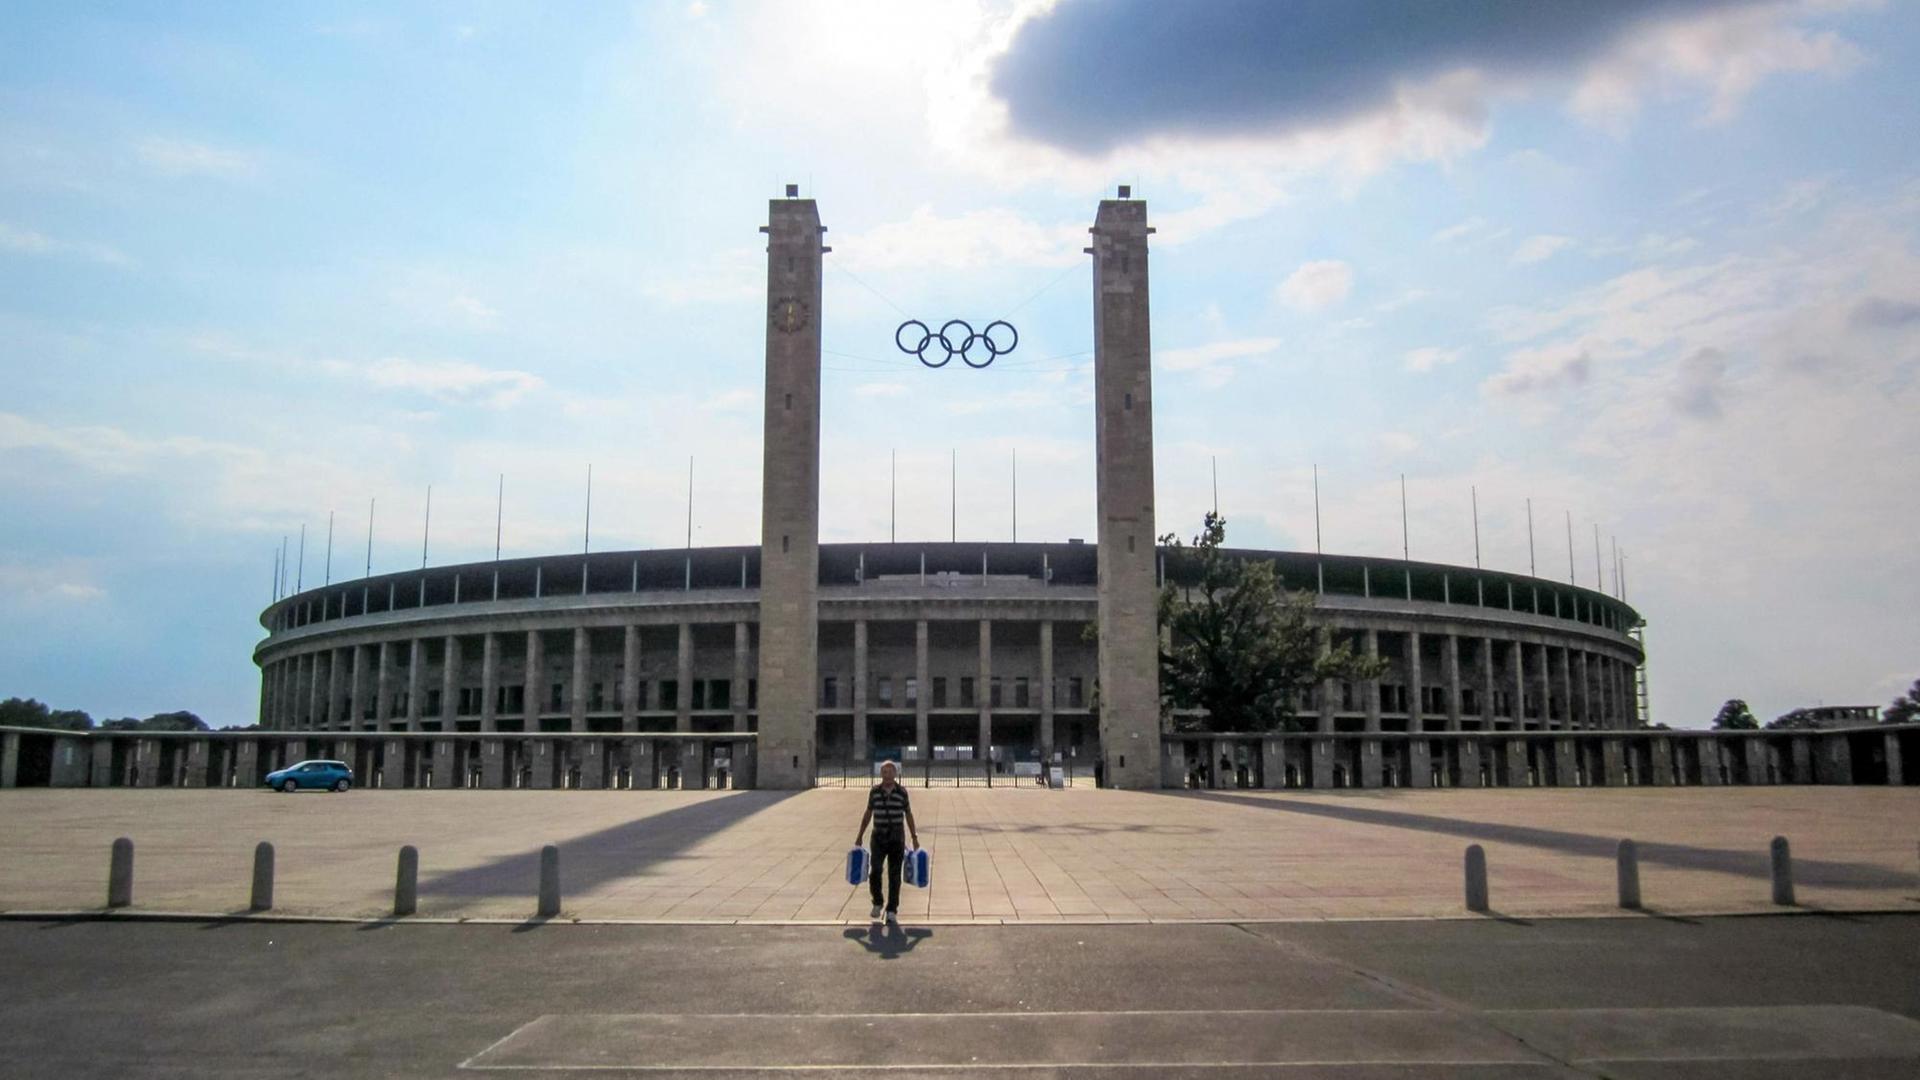 Haupteingang des Olympiastadions Berlin, darüber blauer Himmel und Wolken.